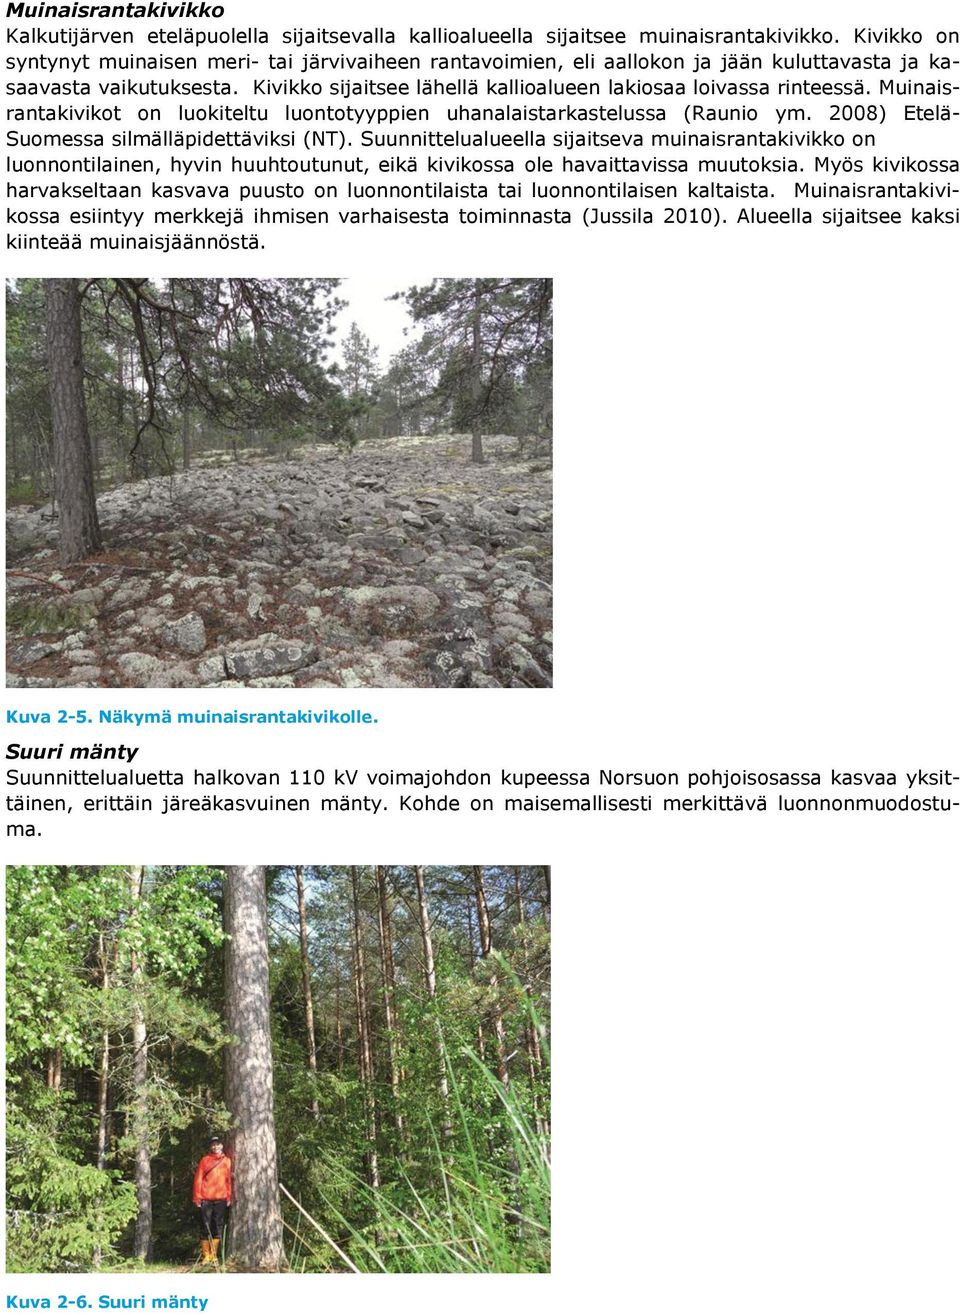 Muinaisrantakivikot on luokiteltu luontotyyppien uhanalaistarkastelussa (Raunio ym. 2008) Etelä- Suomessa silmälläpidettäviksi (NT).